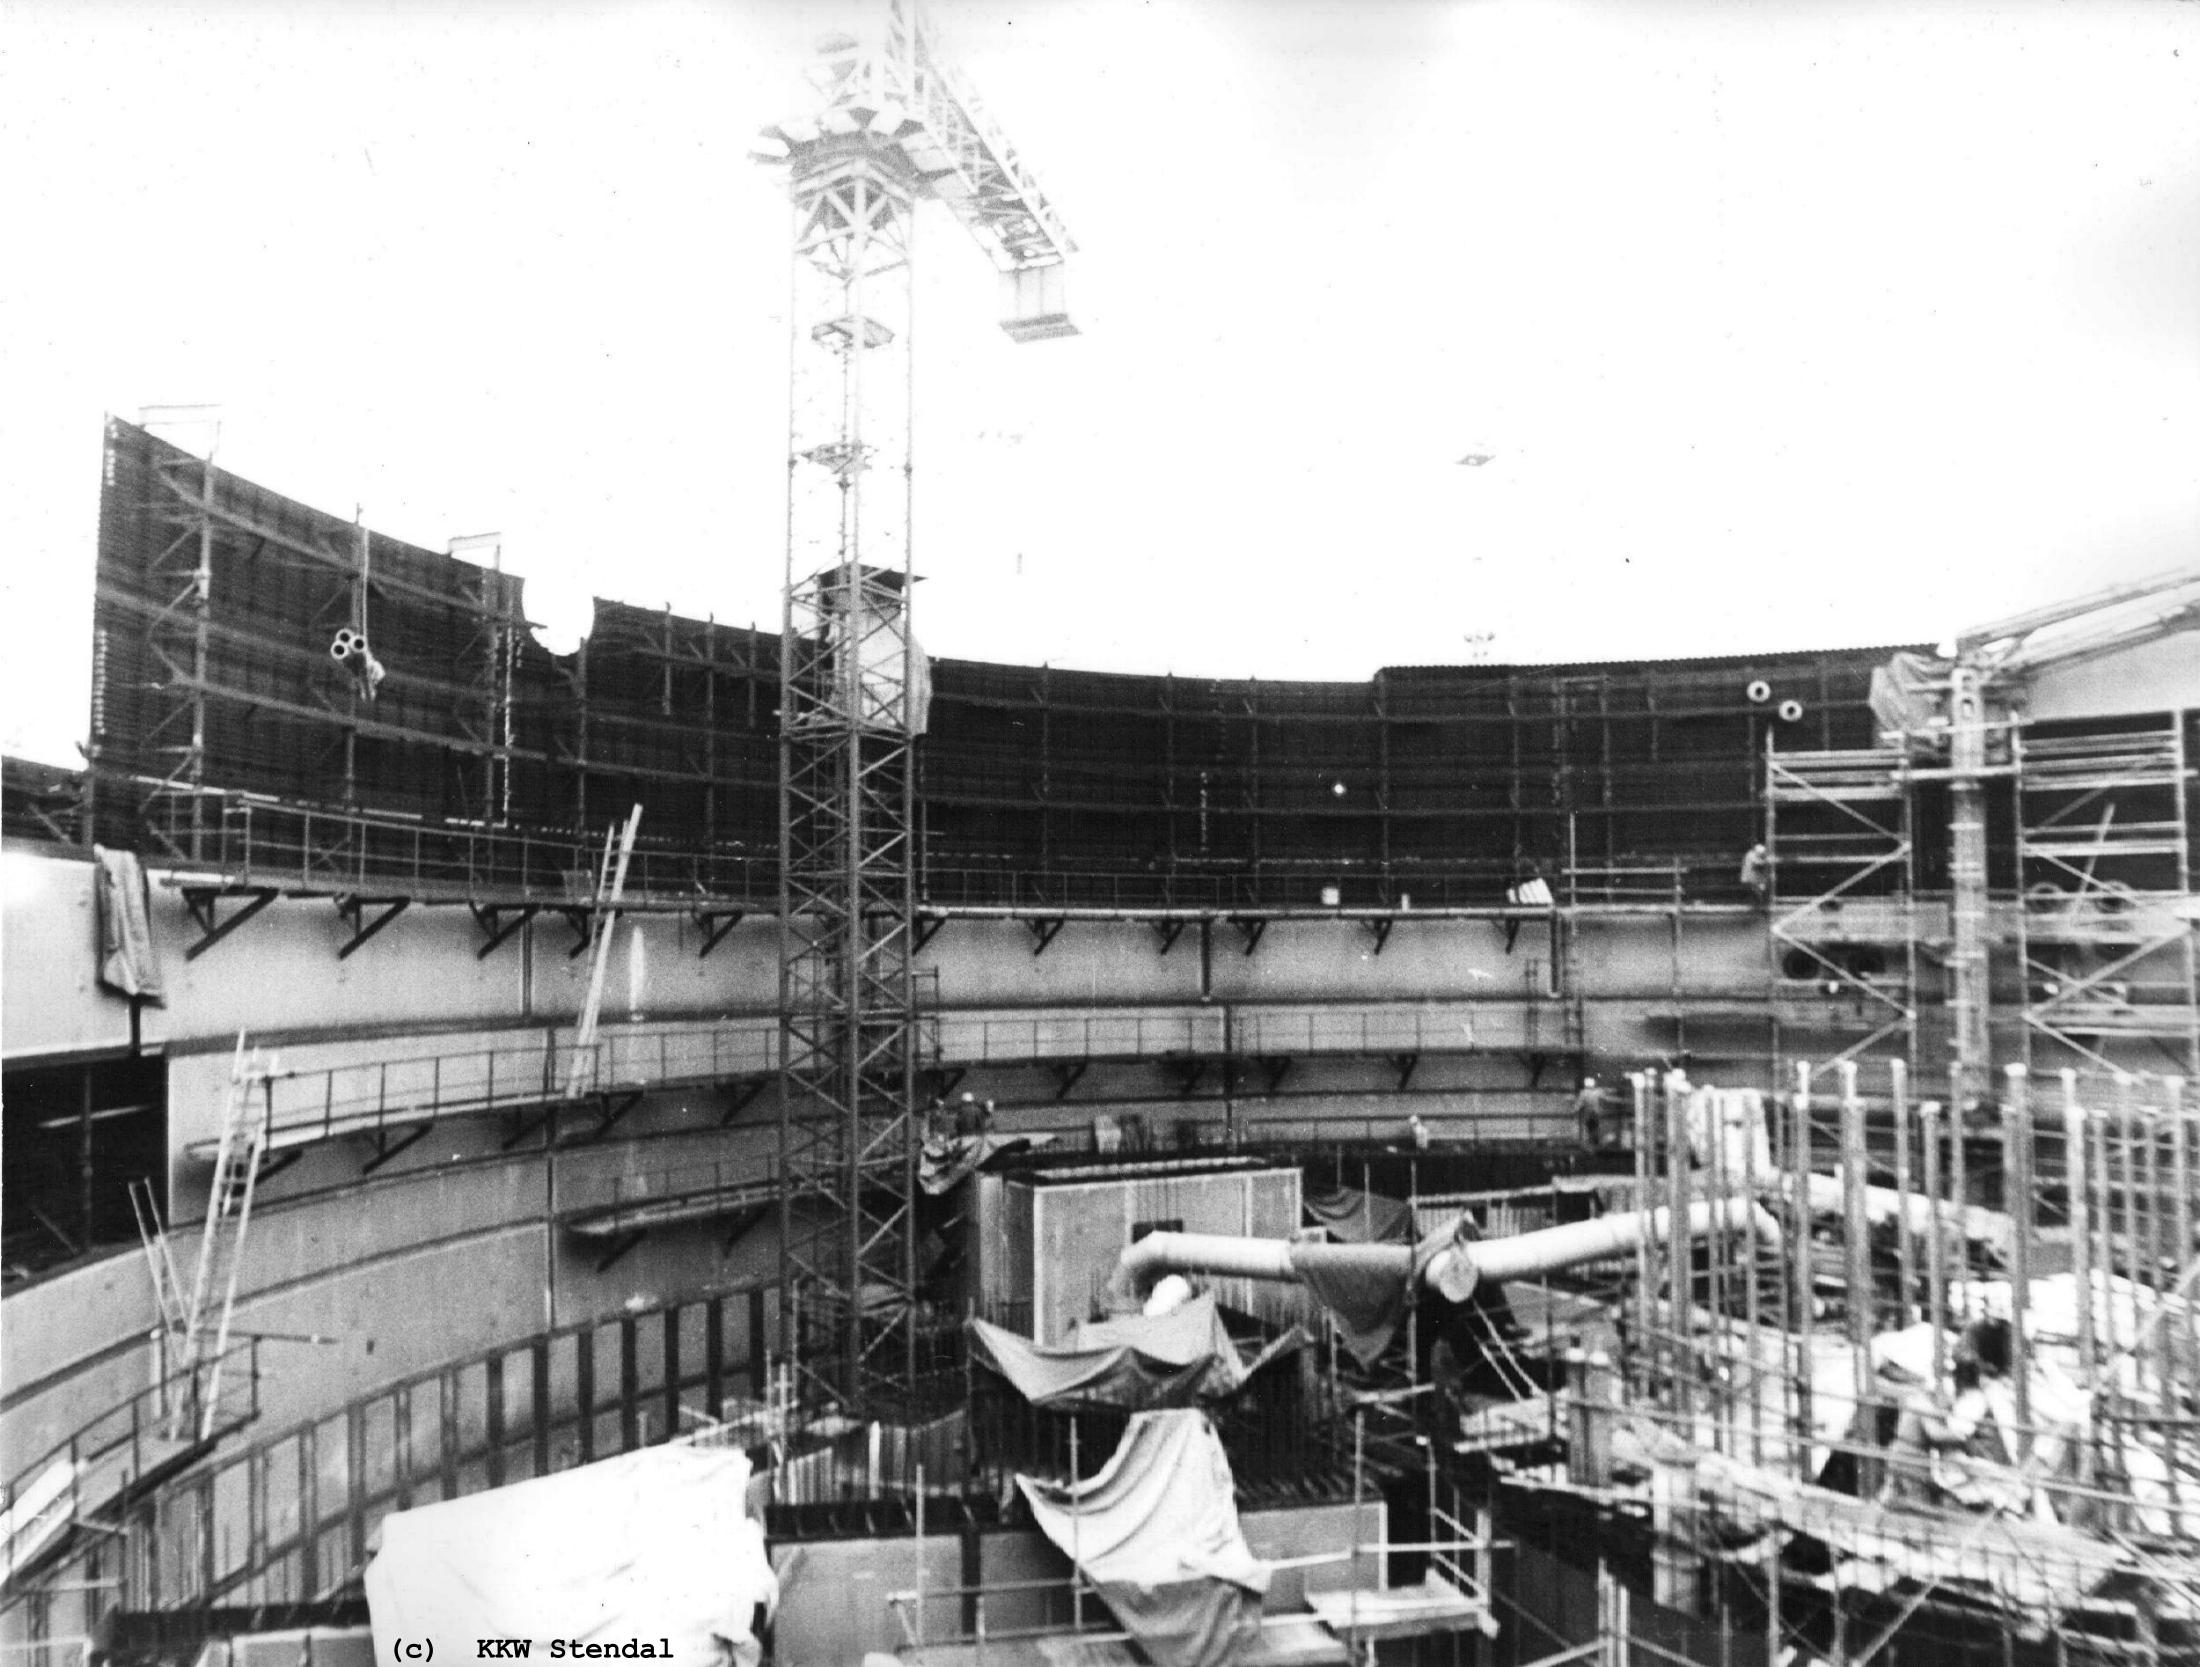  AKW/KKW Stendal 1988, Im Reaktorgebäude A 